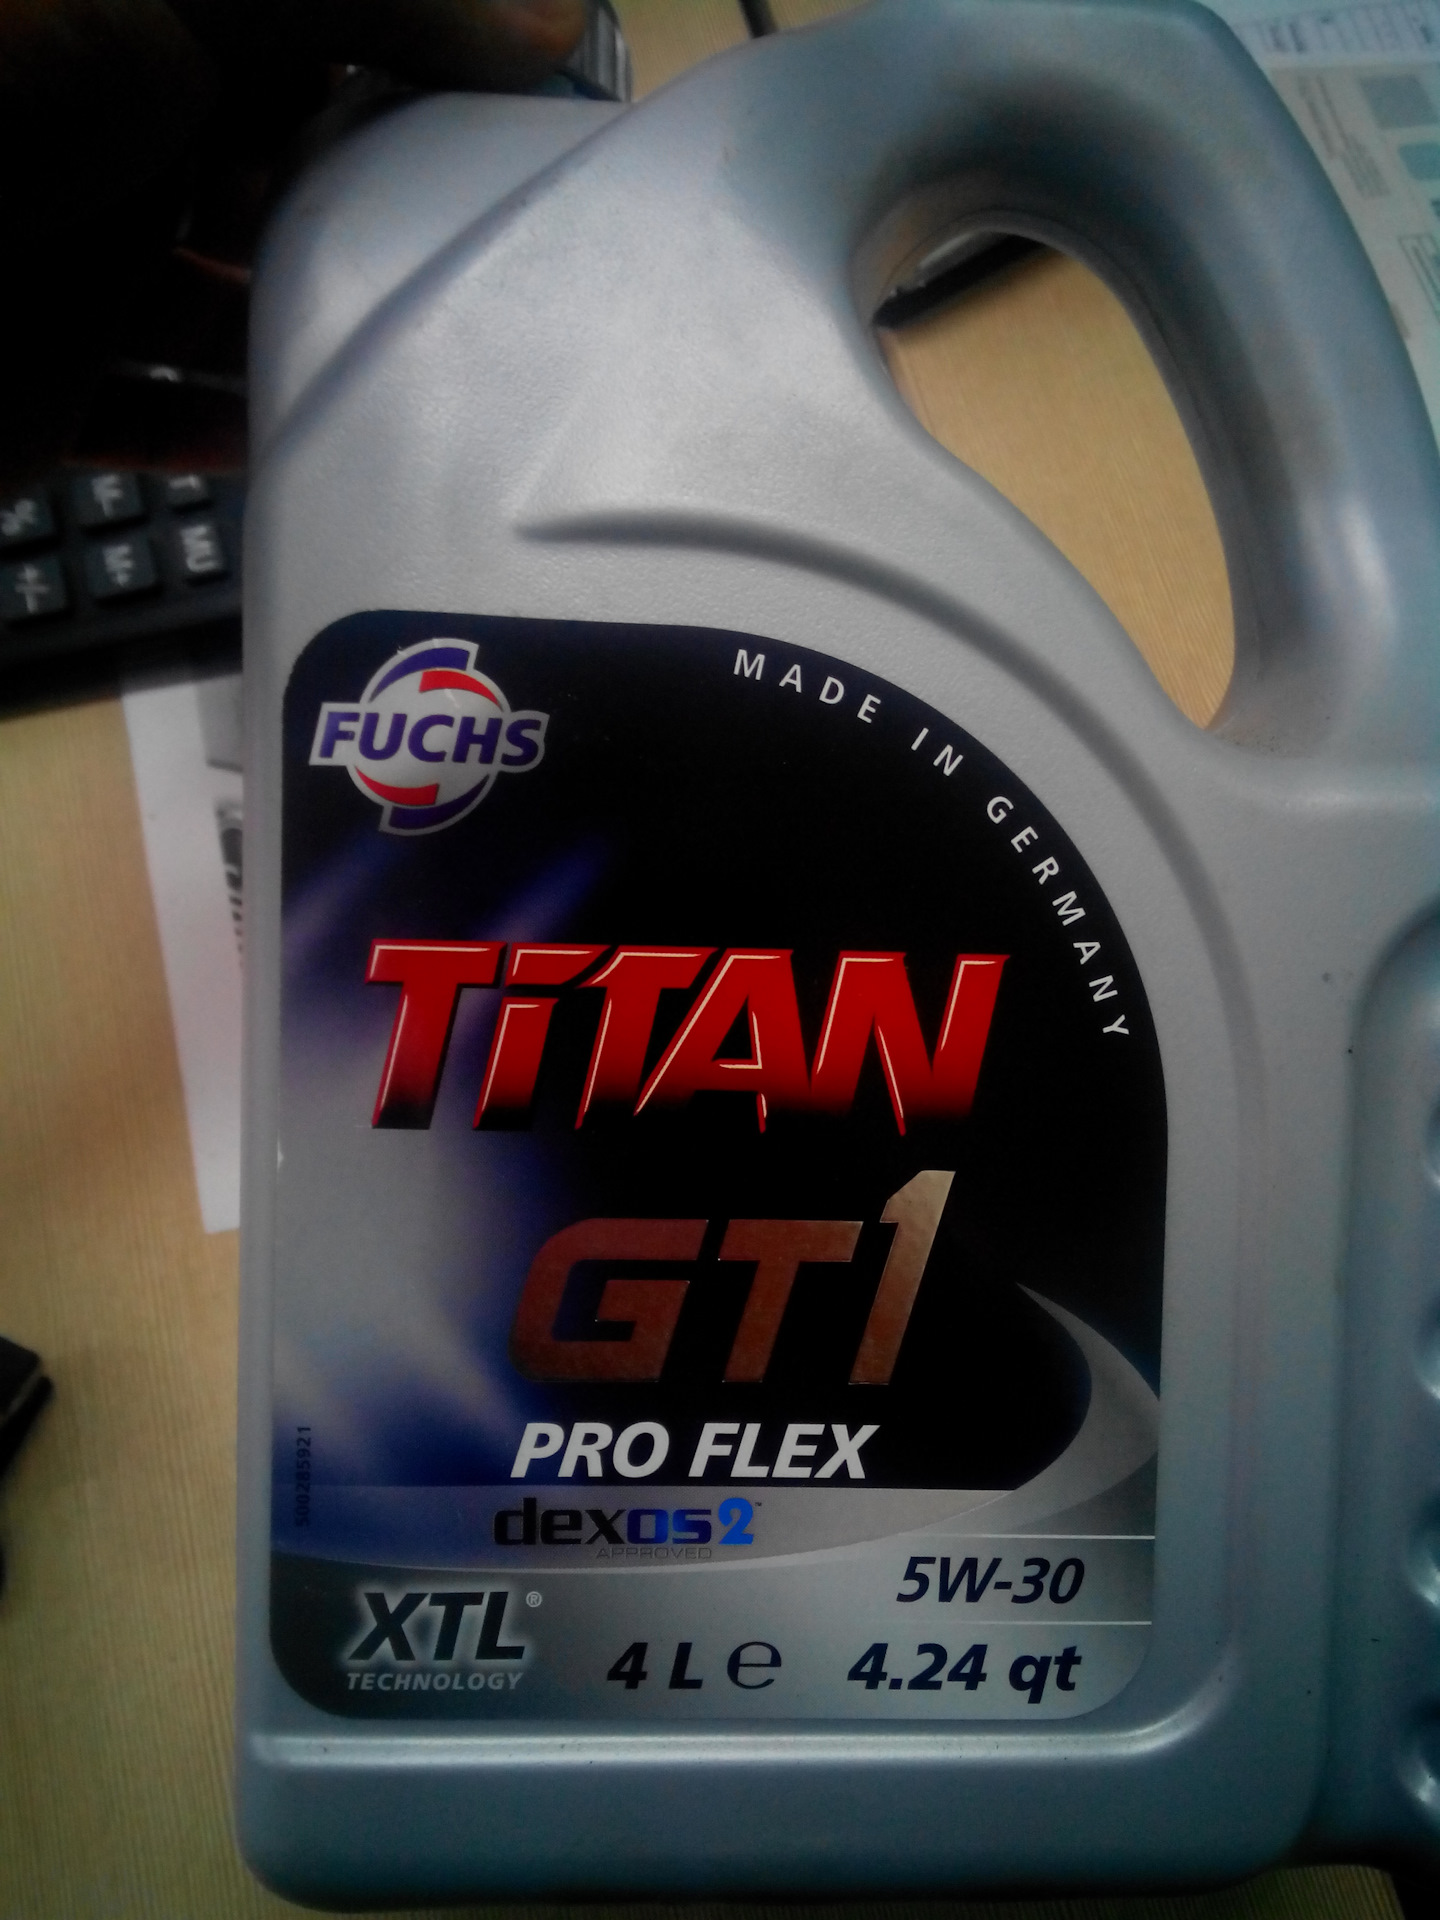 Купить титан 5w30. Моторное масло Титан 5w30. Fuchs Titan 5w30. Масло Титан 5w30 XTL. Масло Титан 5w30 Германия.